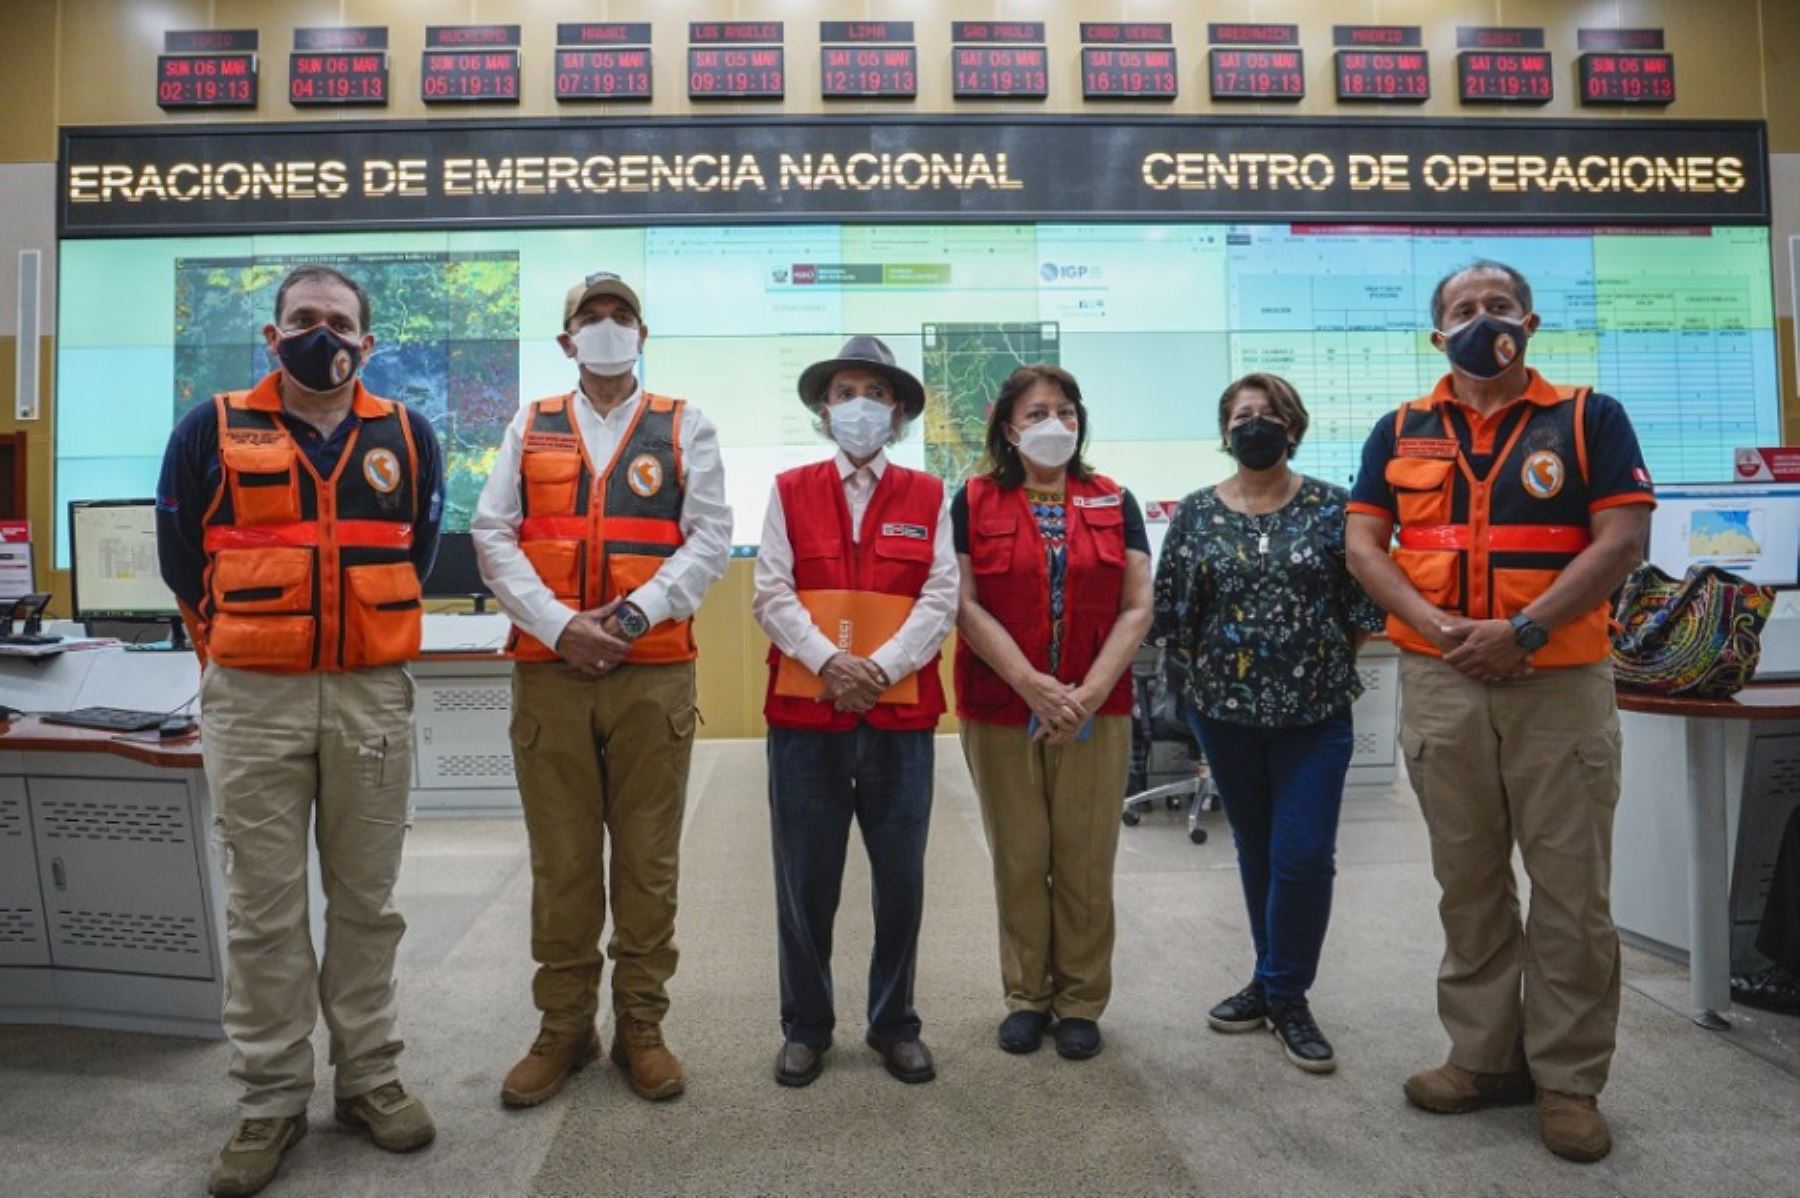 El ministro de Defensa, José Luis Gavidia Arrascue, participó en la reunión de balance de daños, articulación de acciones de atención inmediata y distribución de ayuda humanitaria ante los efectos de las intensas lluvias que se registran en la región Cajamarca.